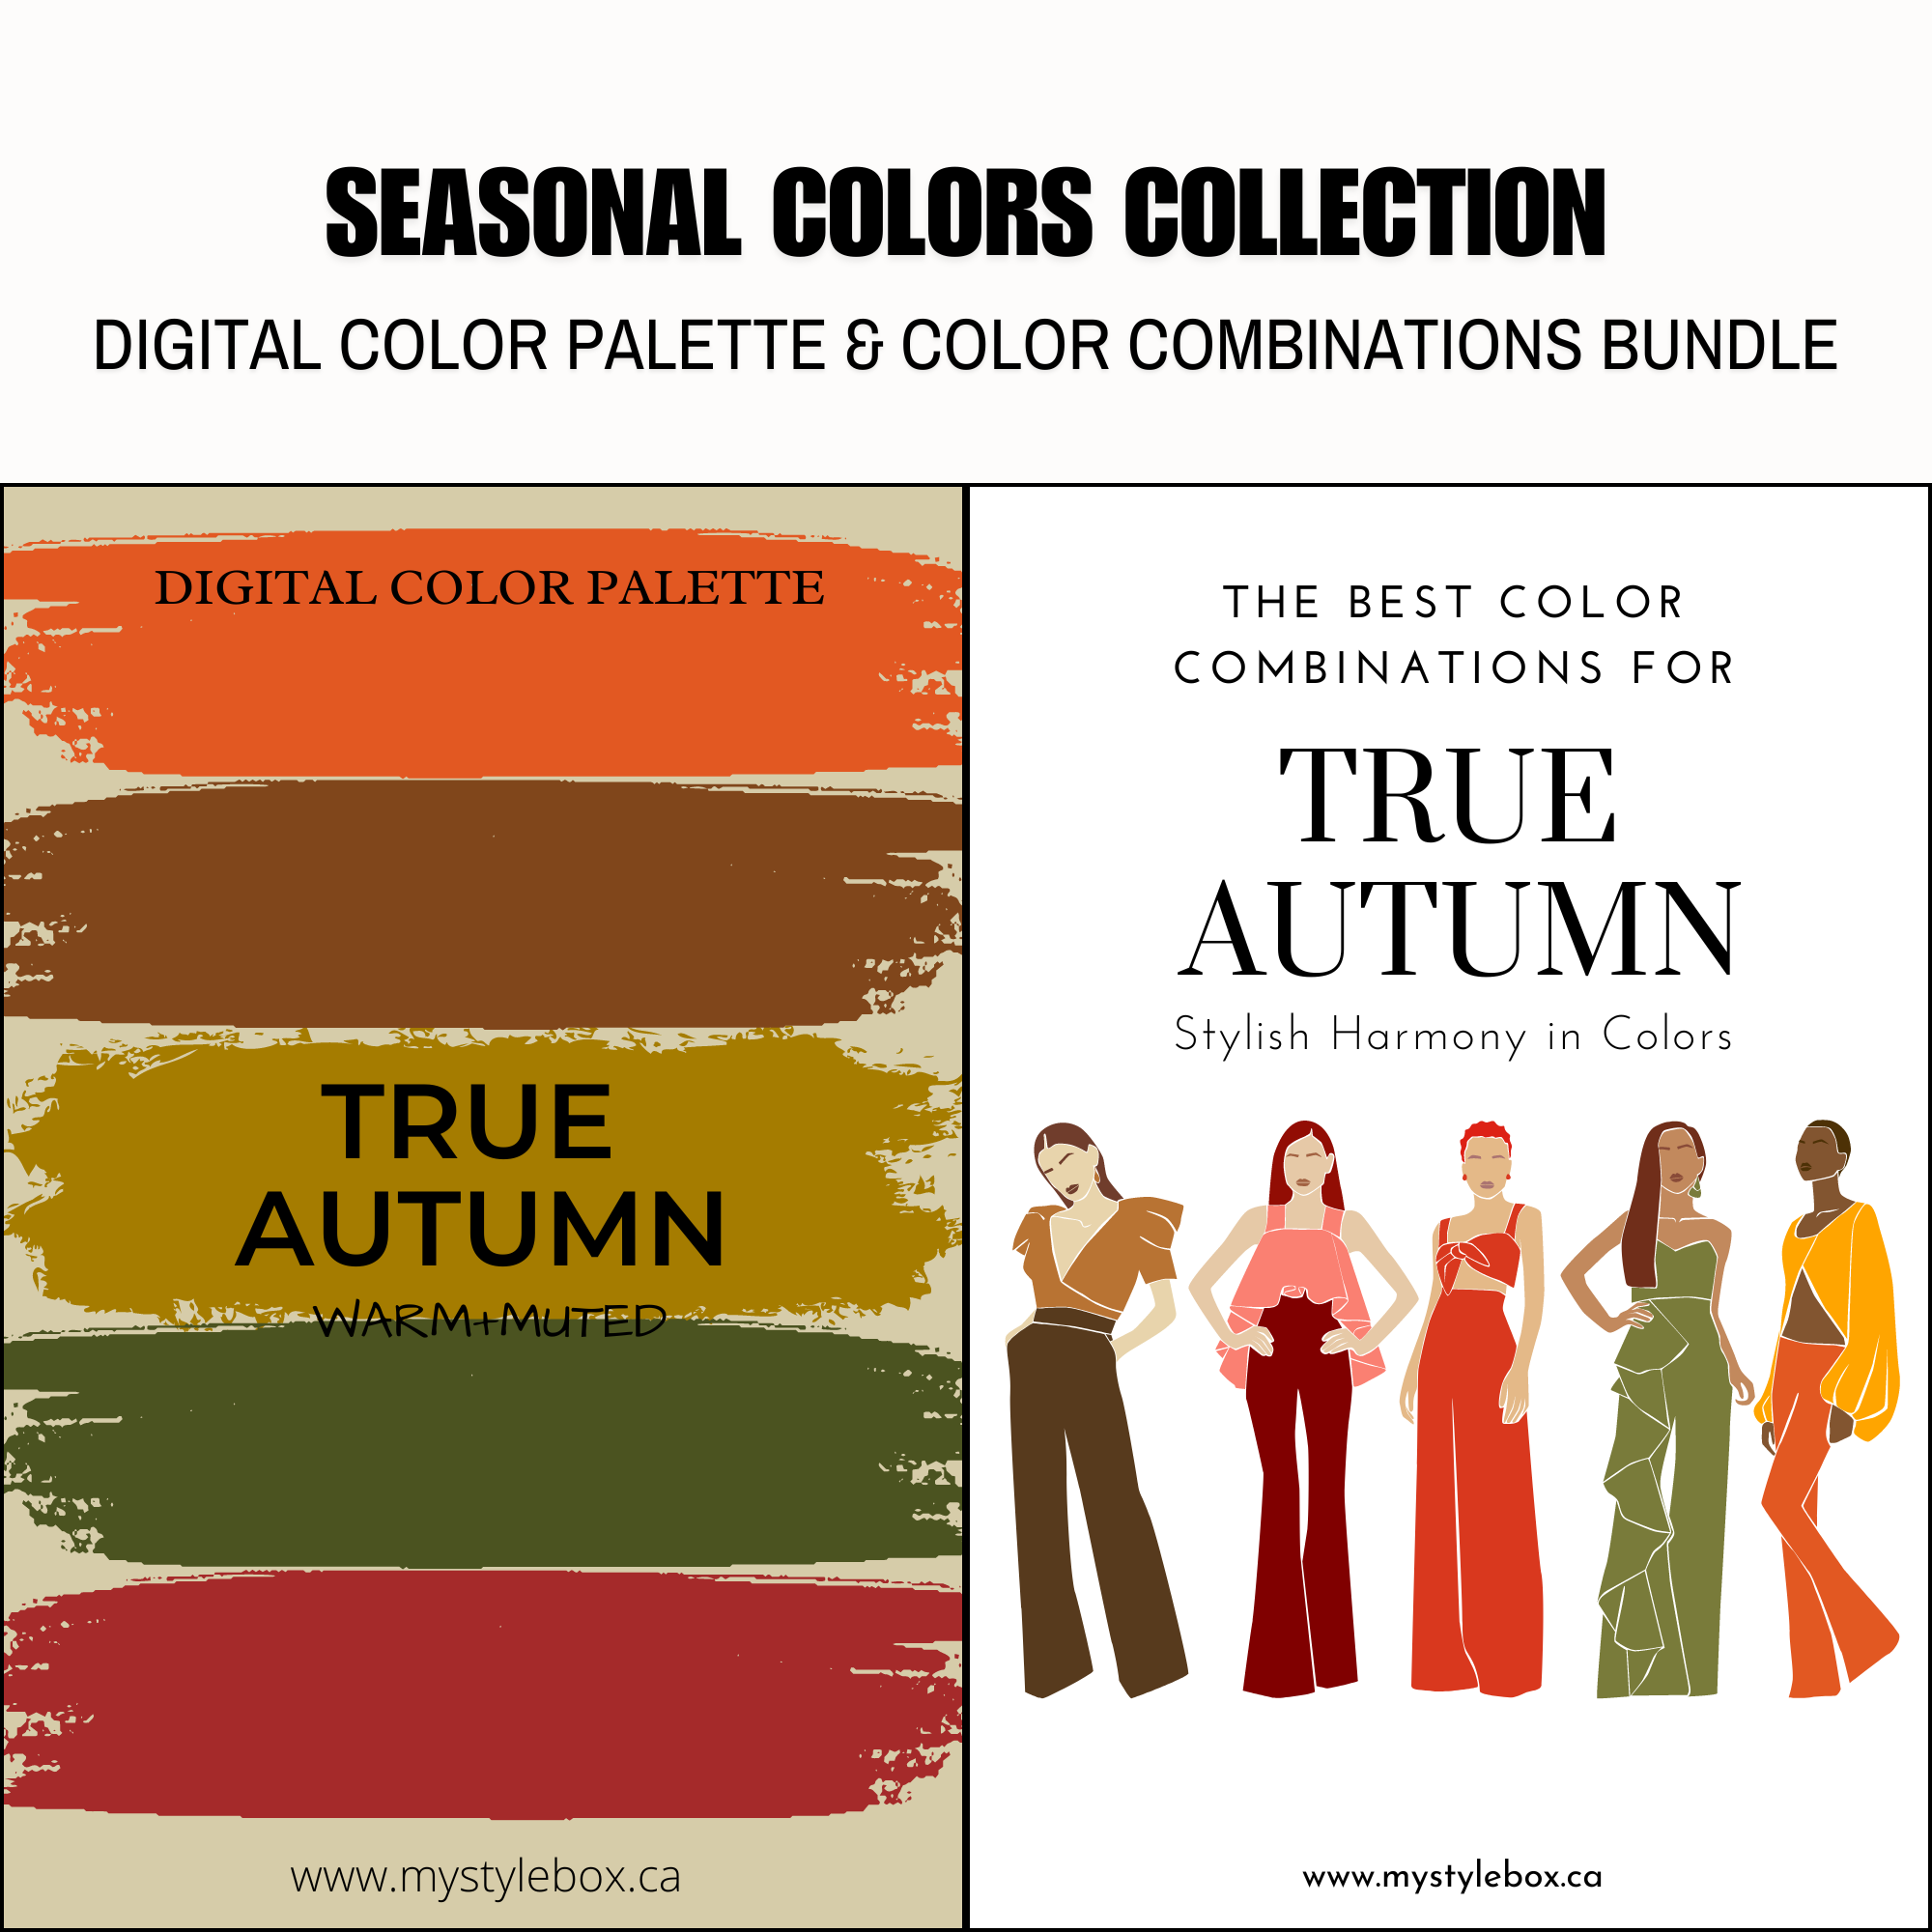 Paquete de paleta de colores digitales y combinaciones de colores True Autumn Season